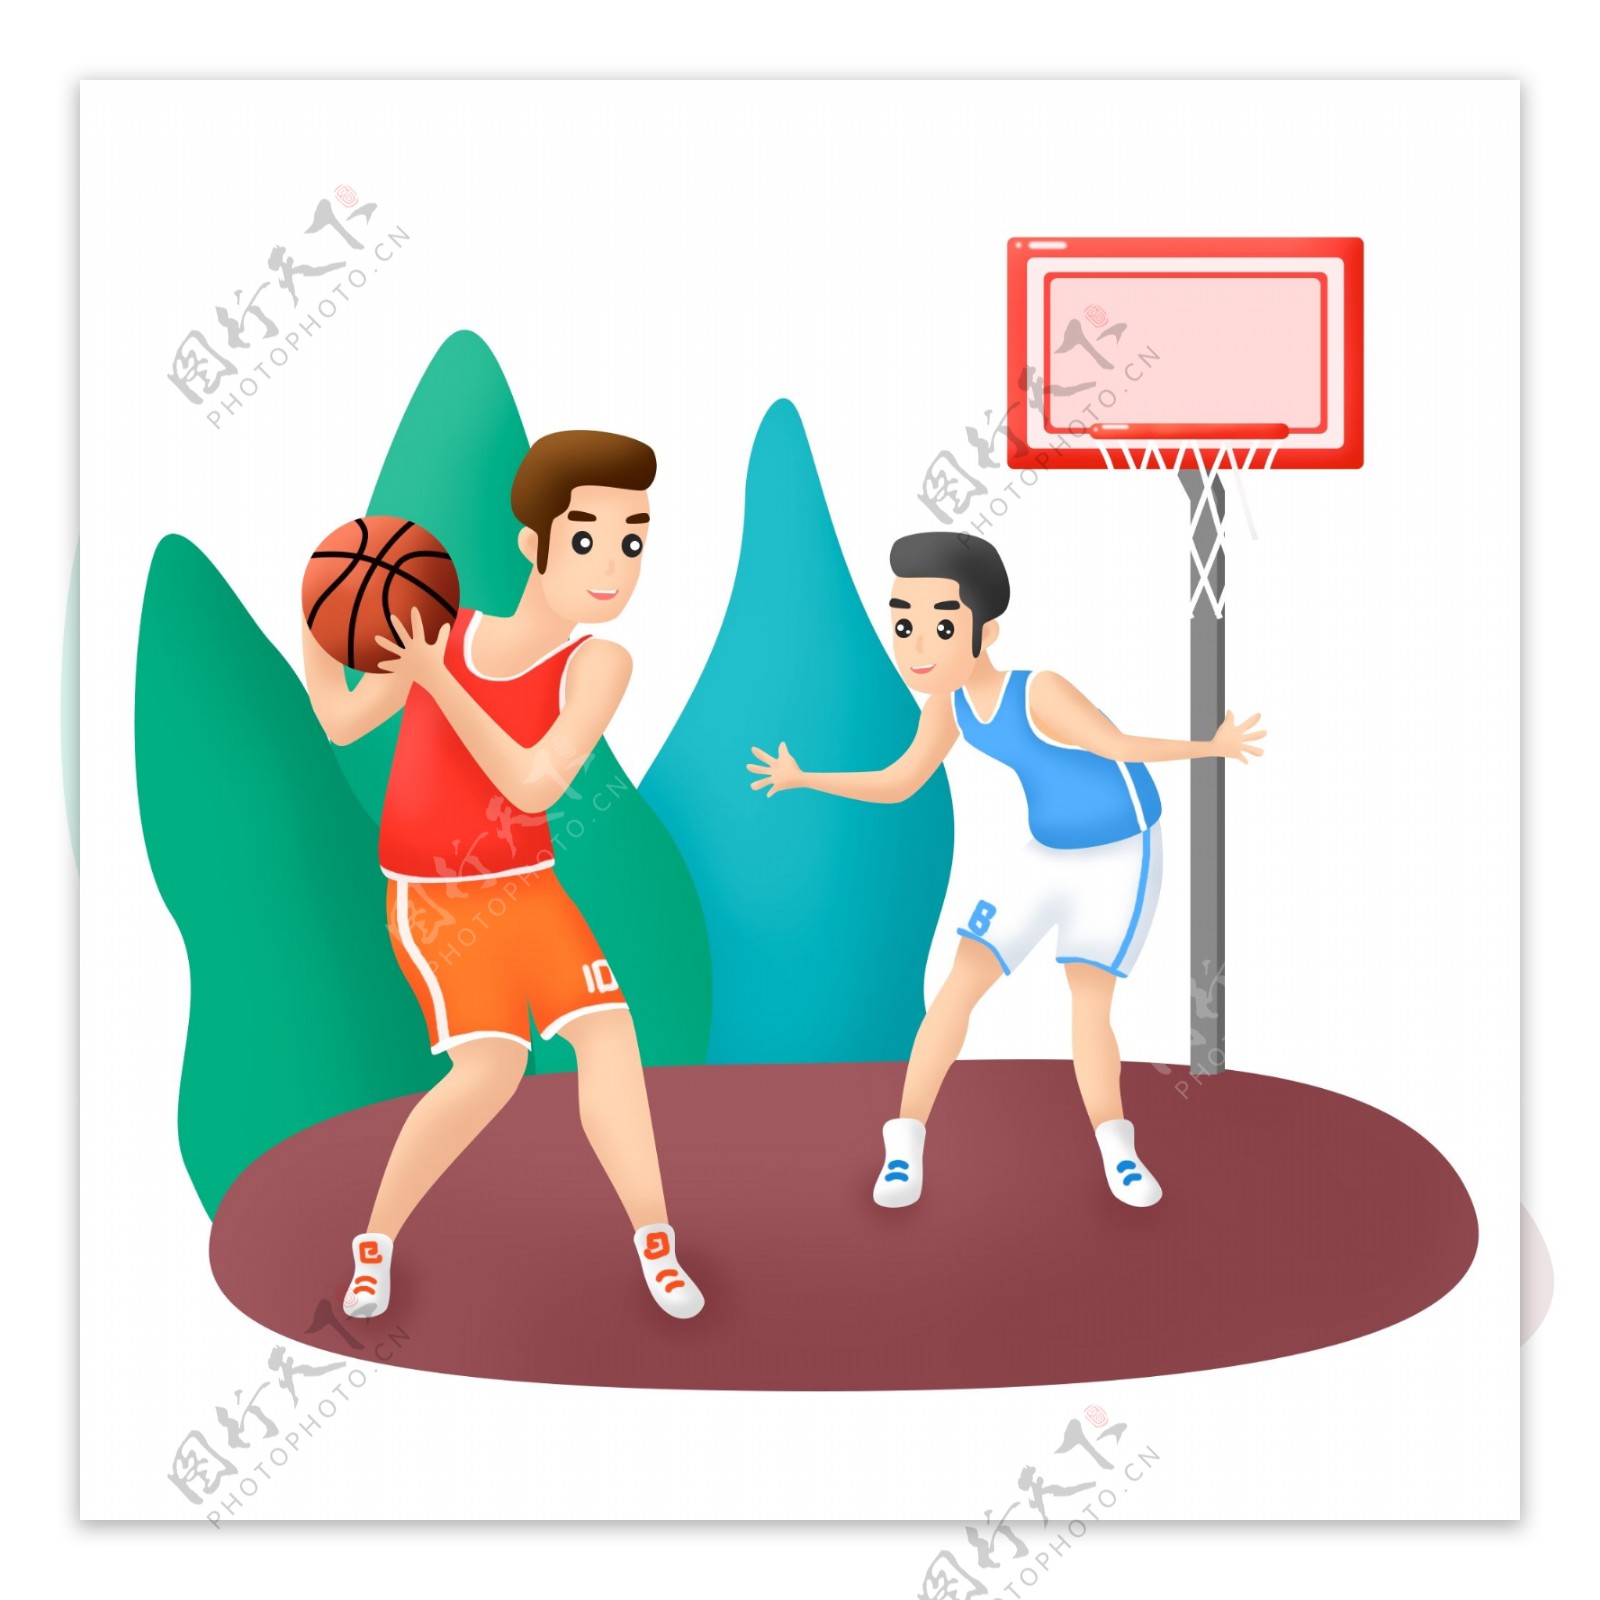 世界篮球日双人打篮球场景元素可商用